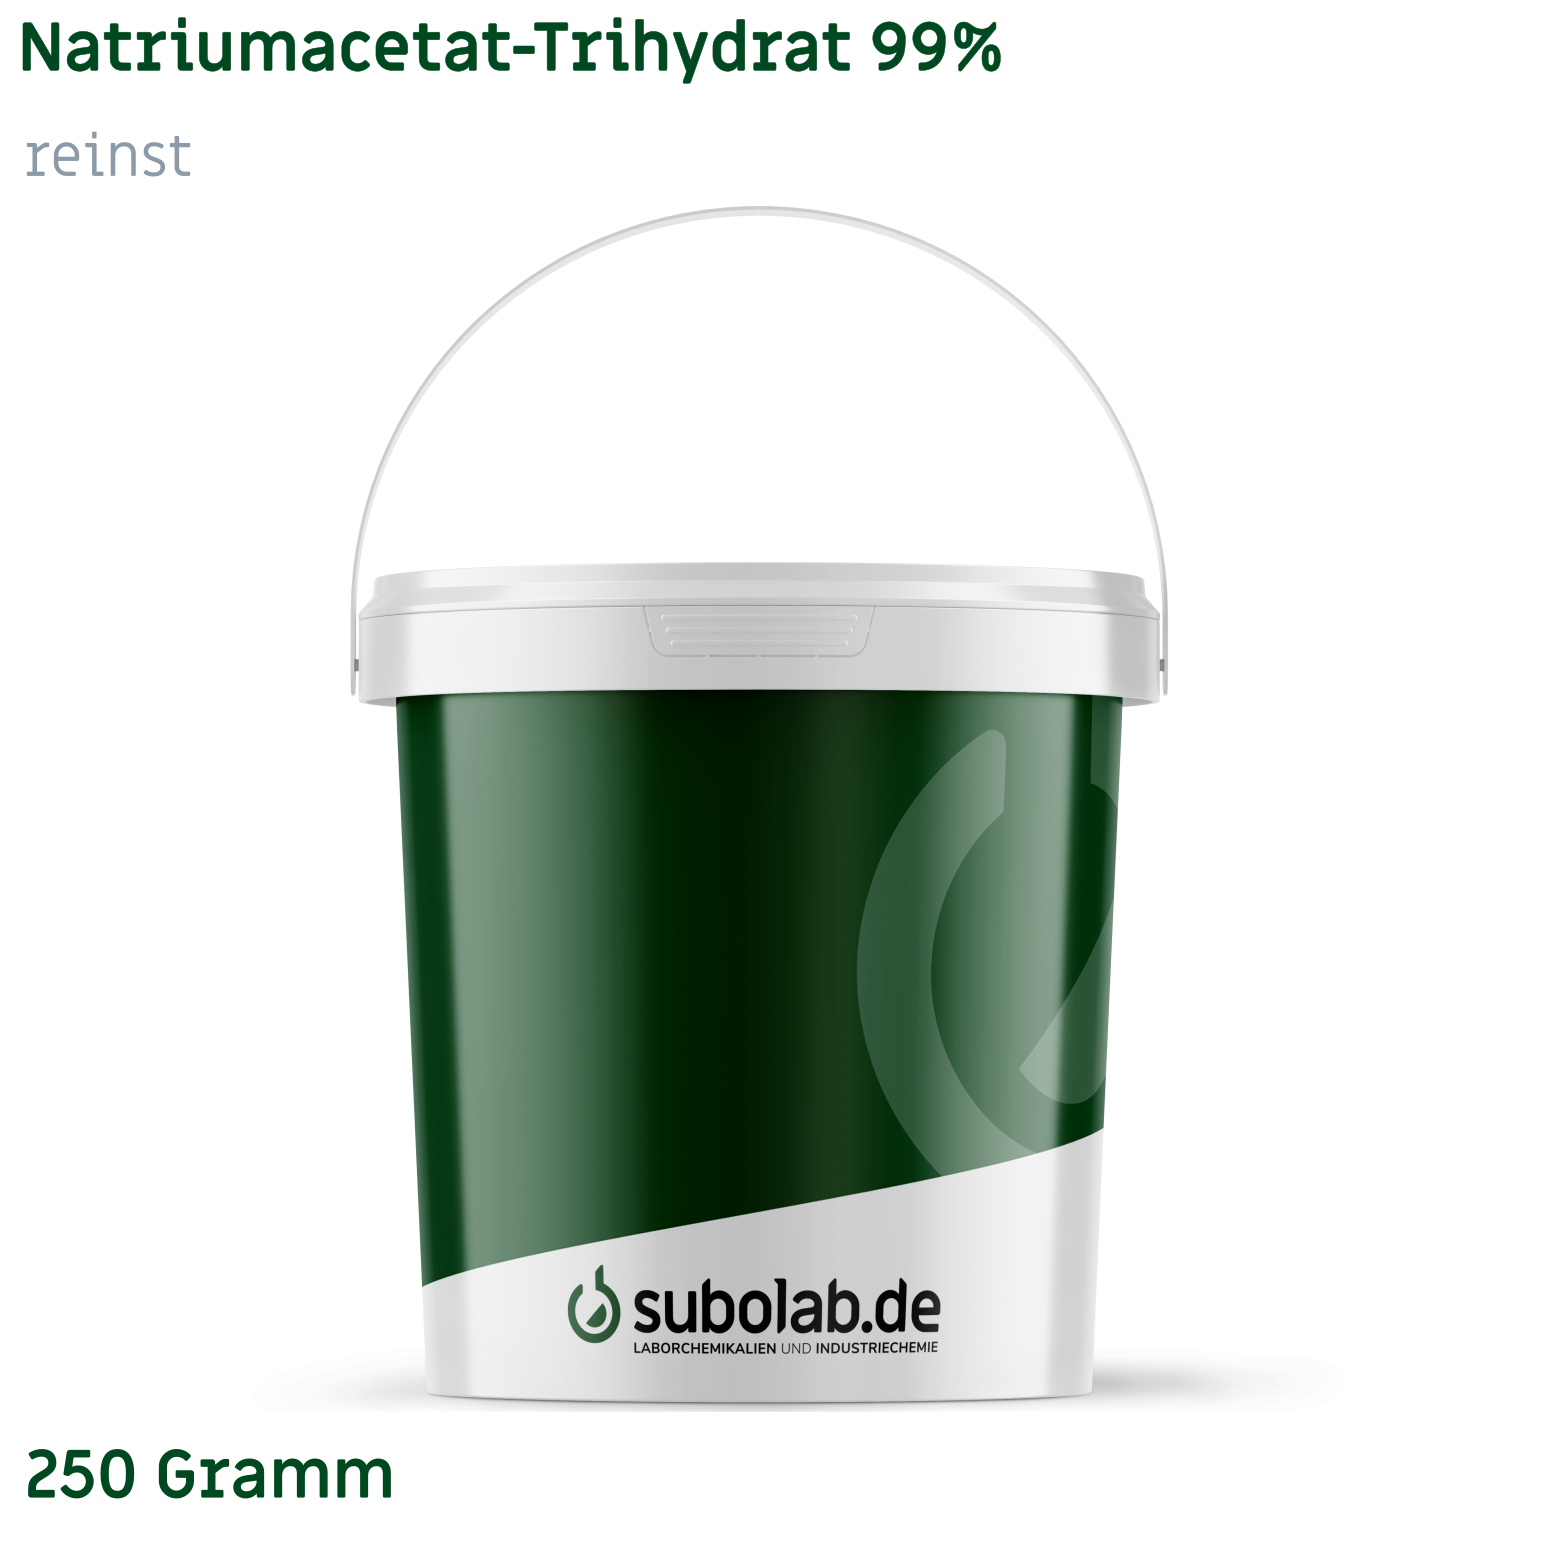 Bild von Natriumacetat - Trihydrat 99% reinst (250 Gramm)